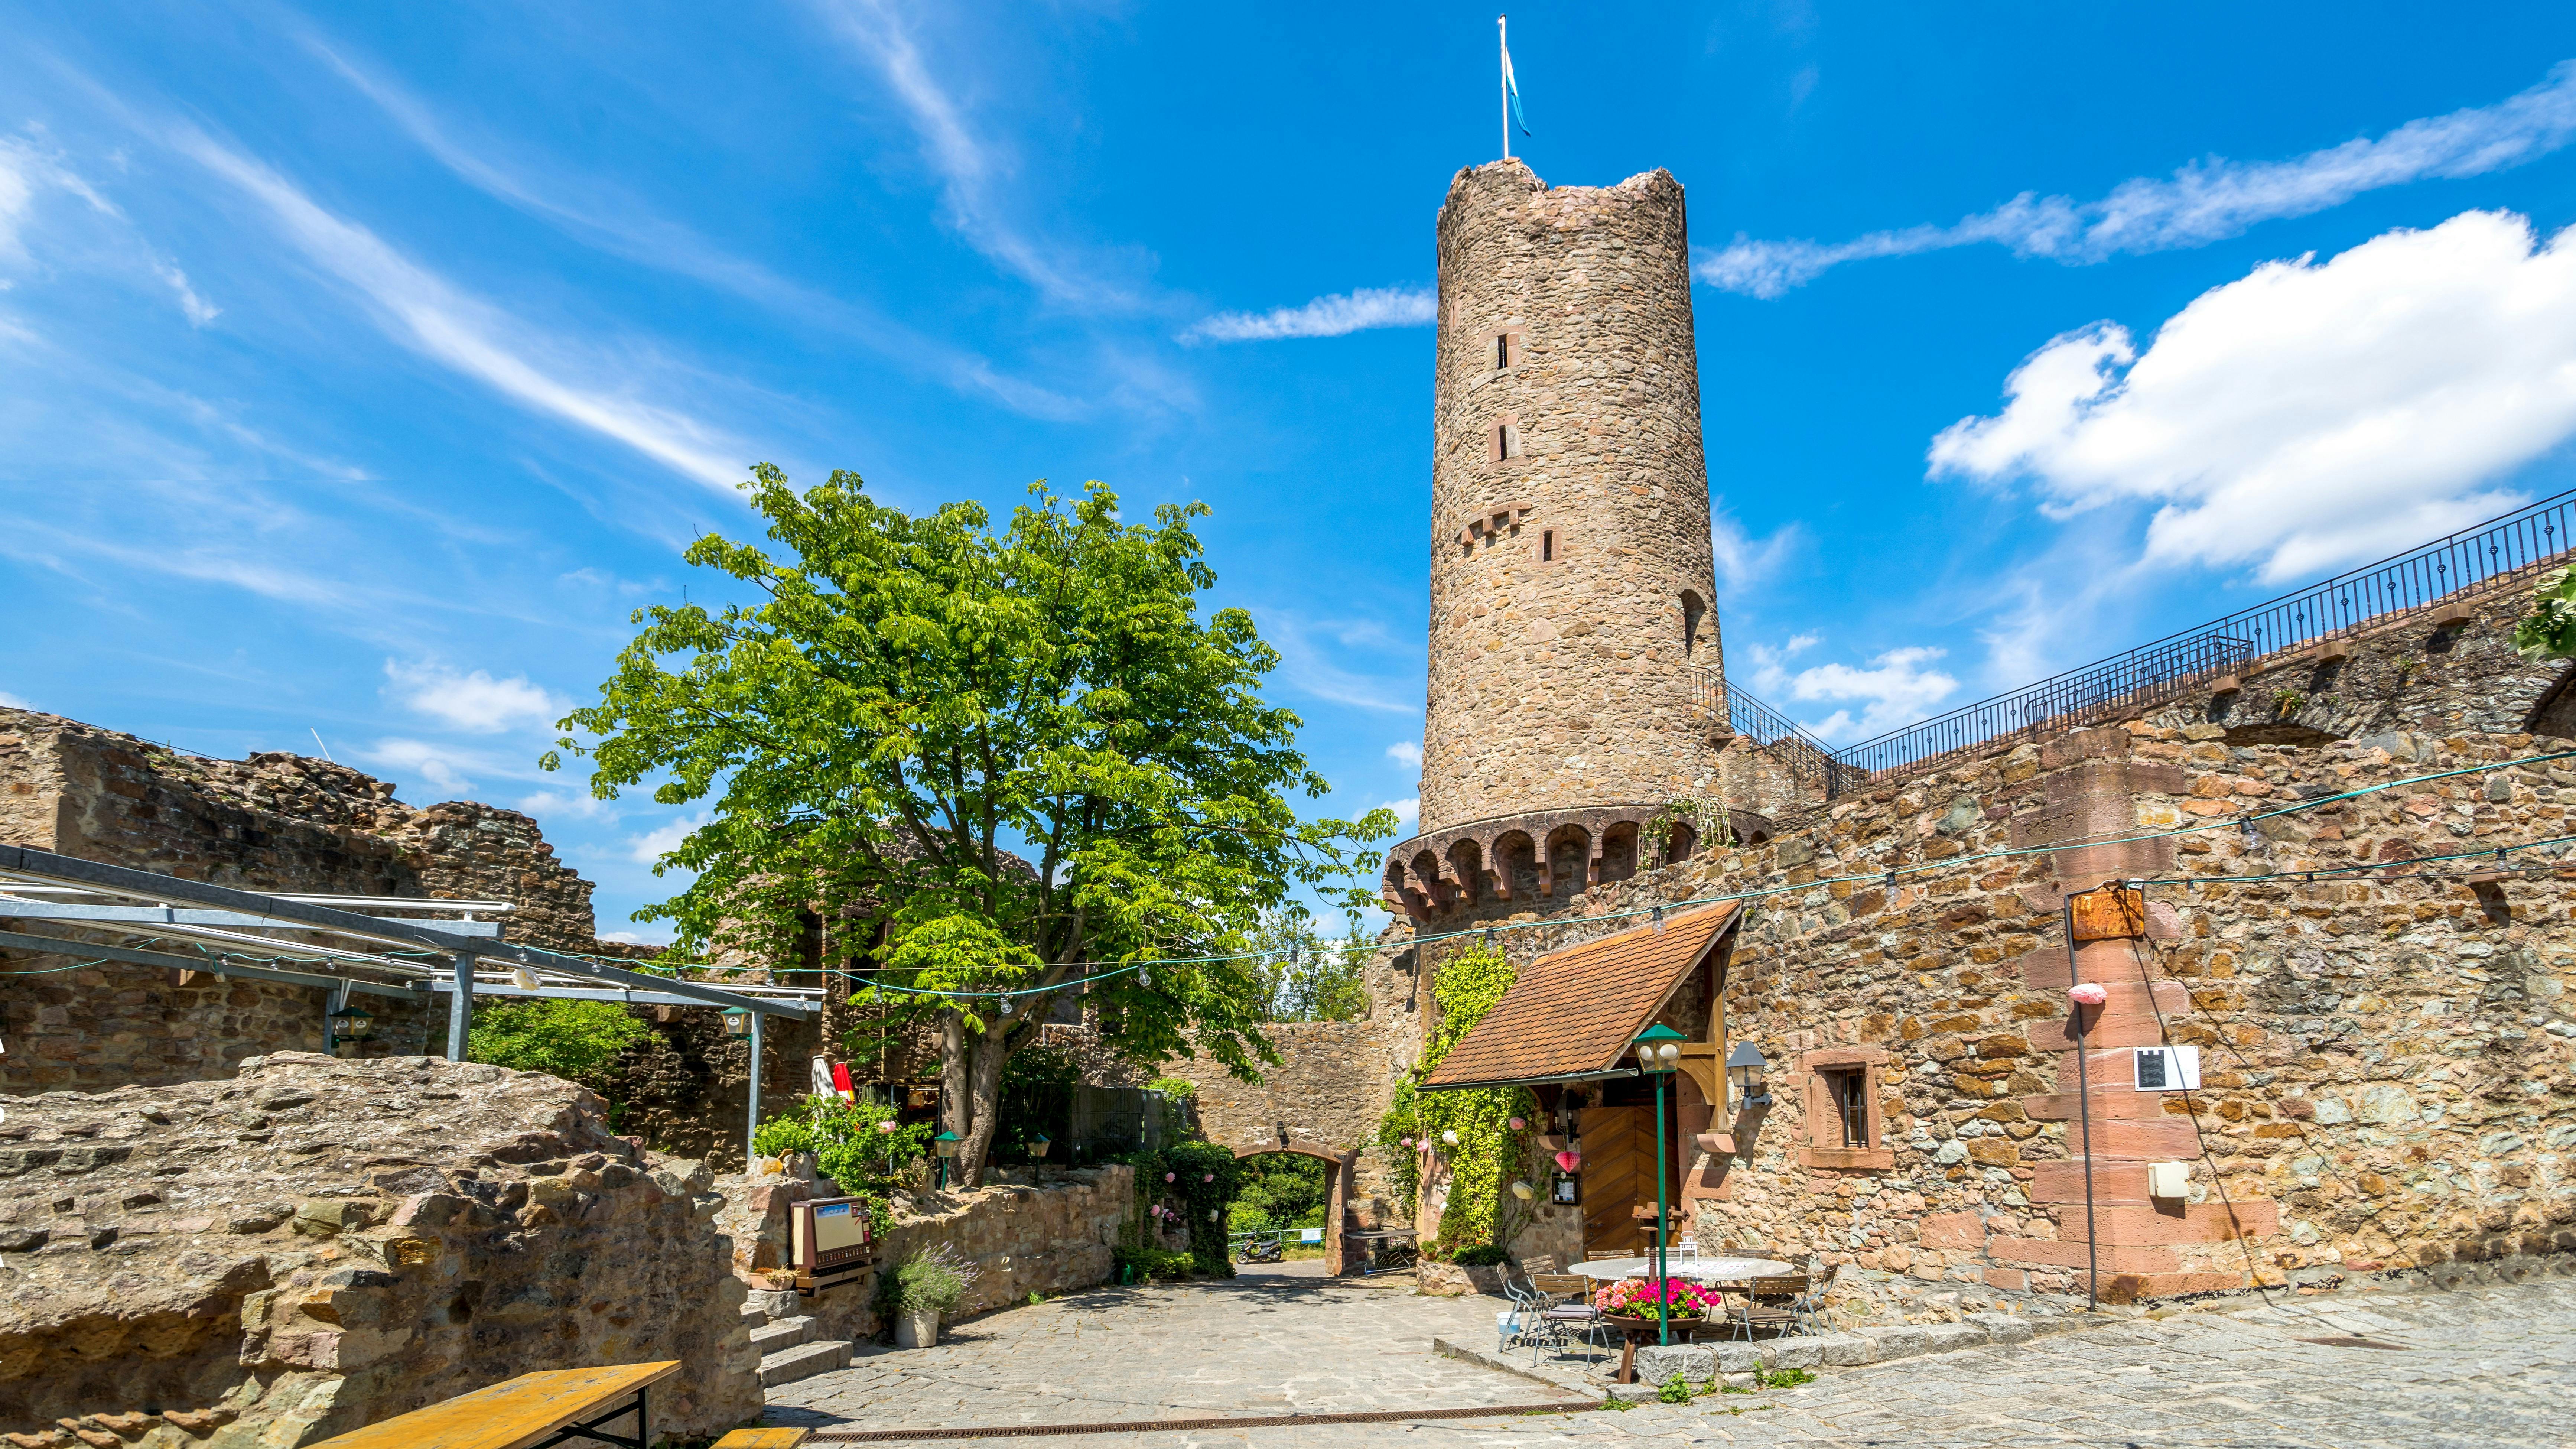 Excursión en scooter autoequilibrado al castillo de Windeck en Weinheim